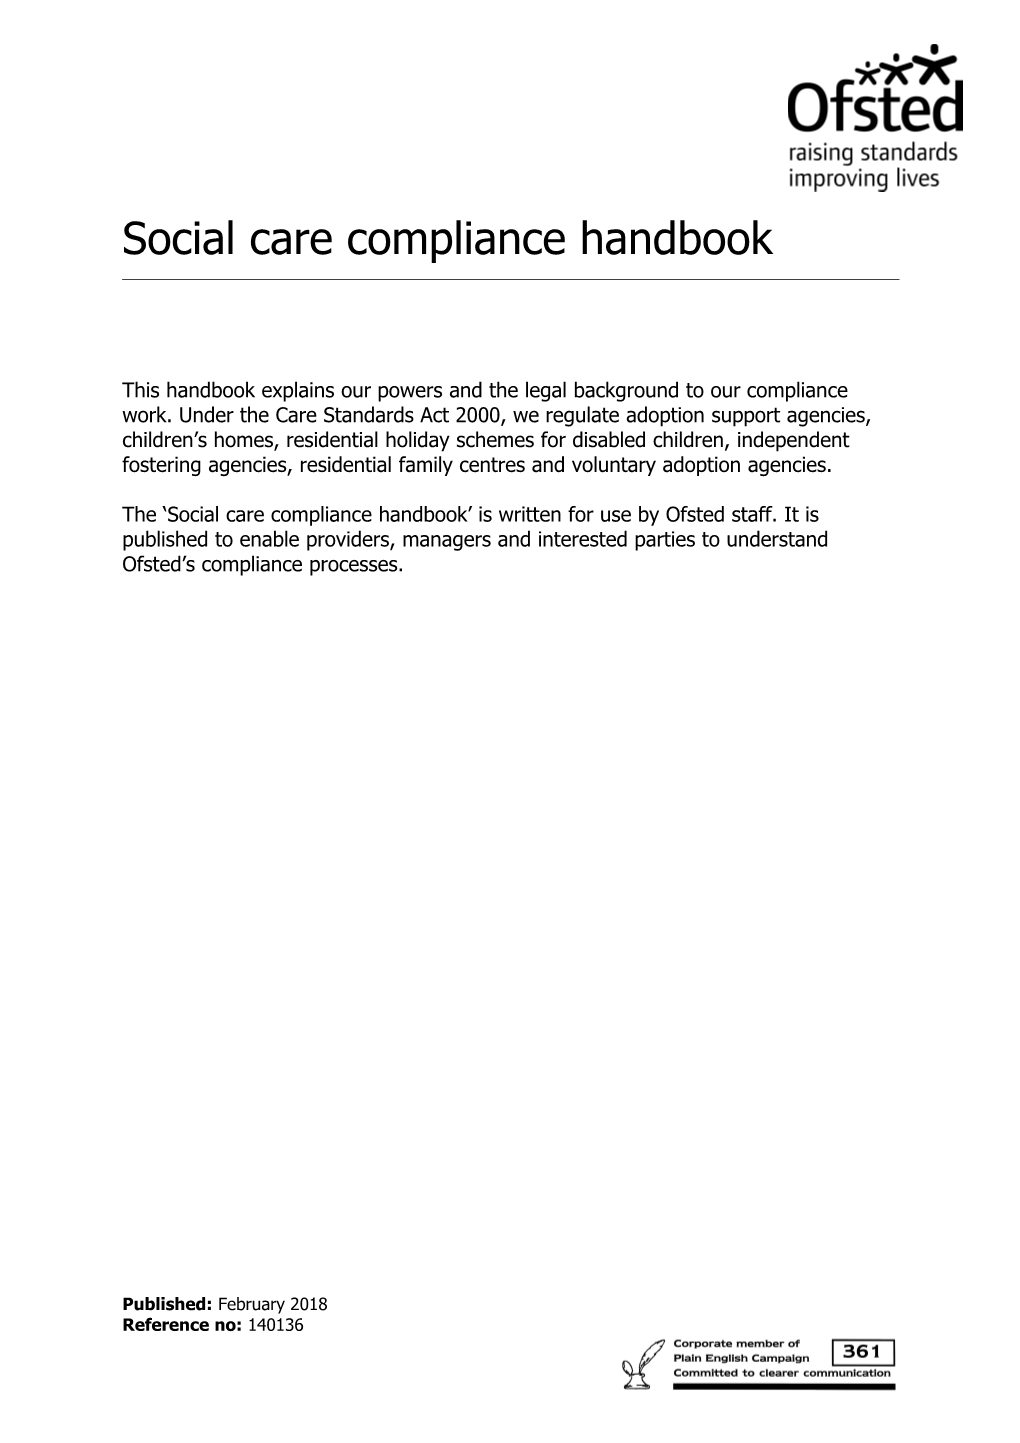 Social Care Compliance Handbook